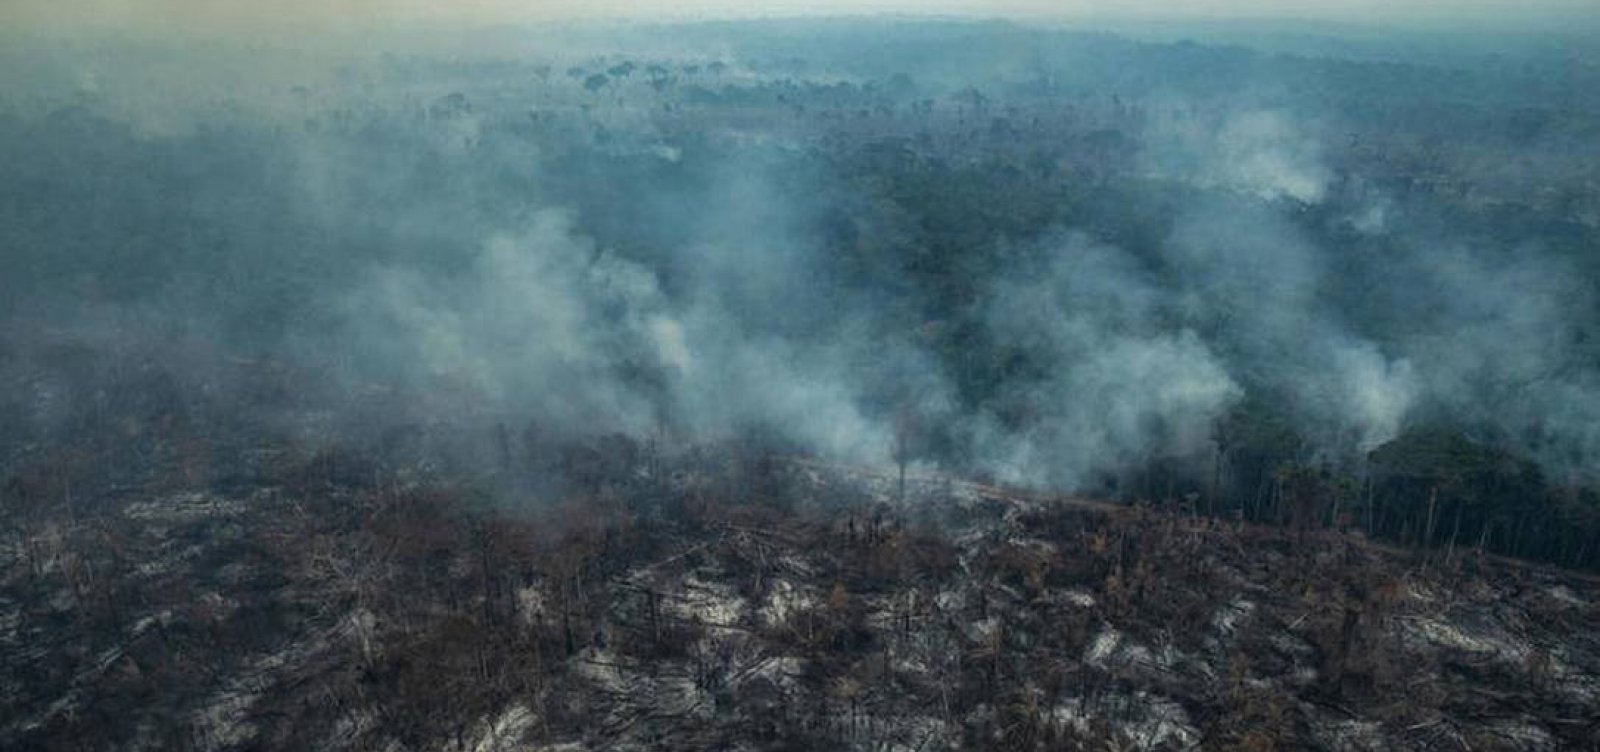 Cidade de Altamira, no Pará, tem mais de 2 mil incêndios em agosto